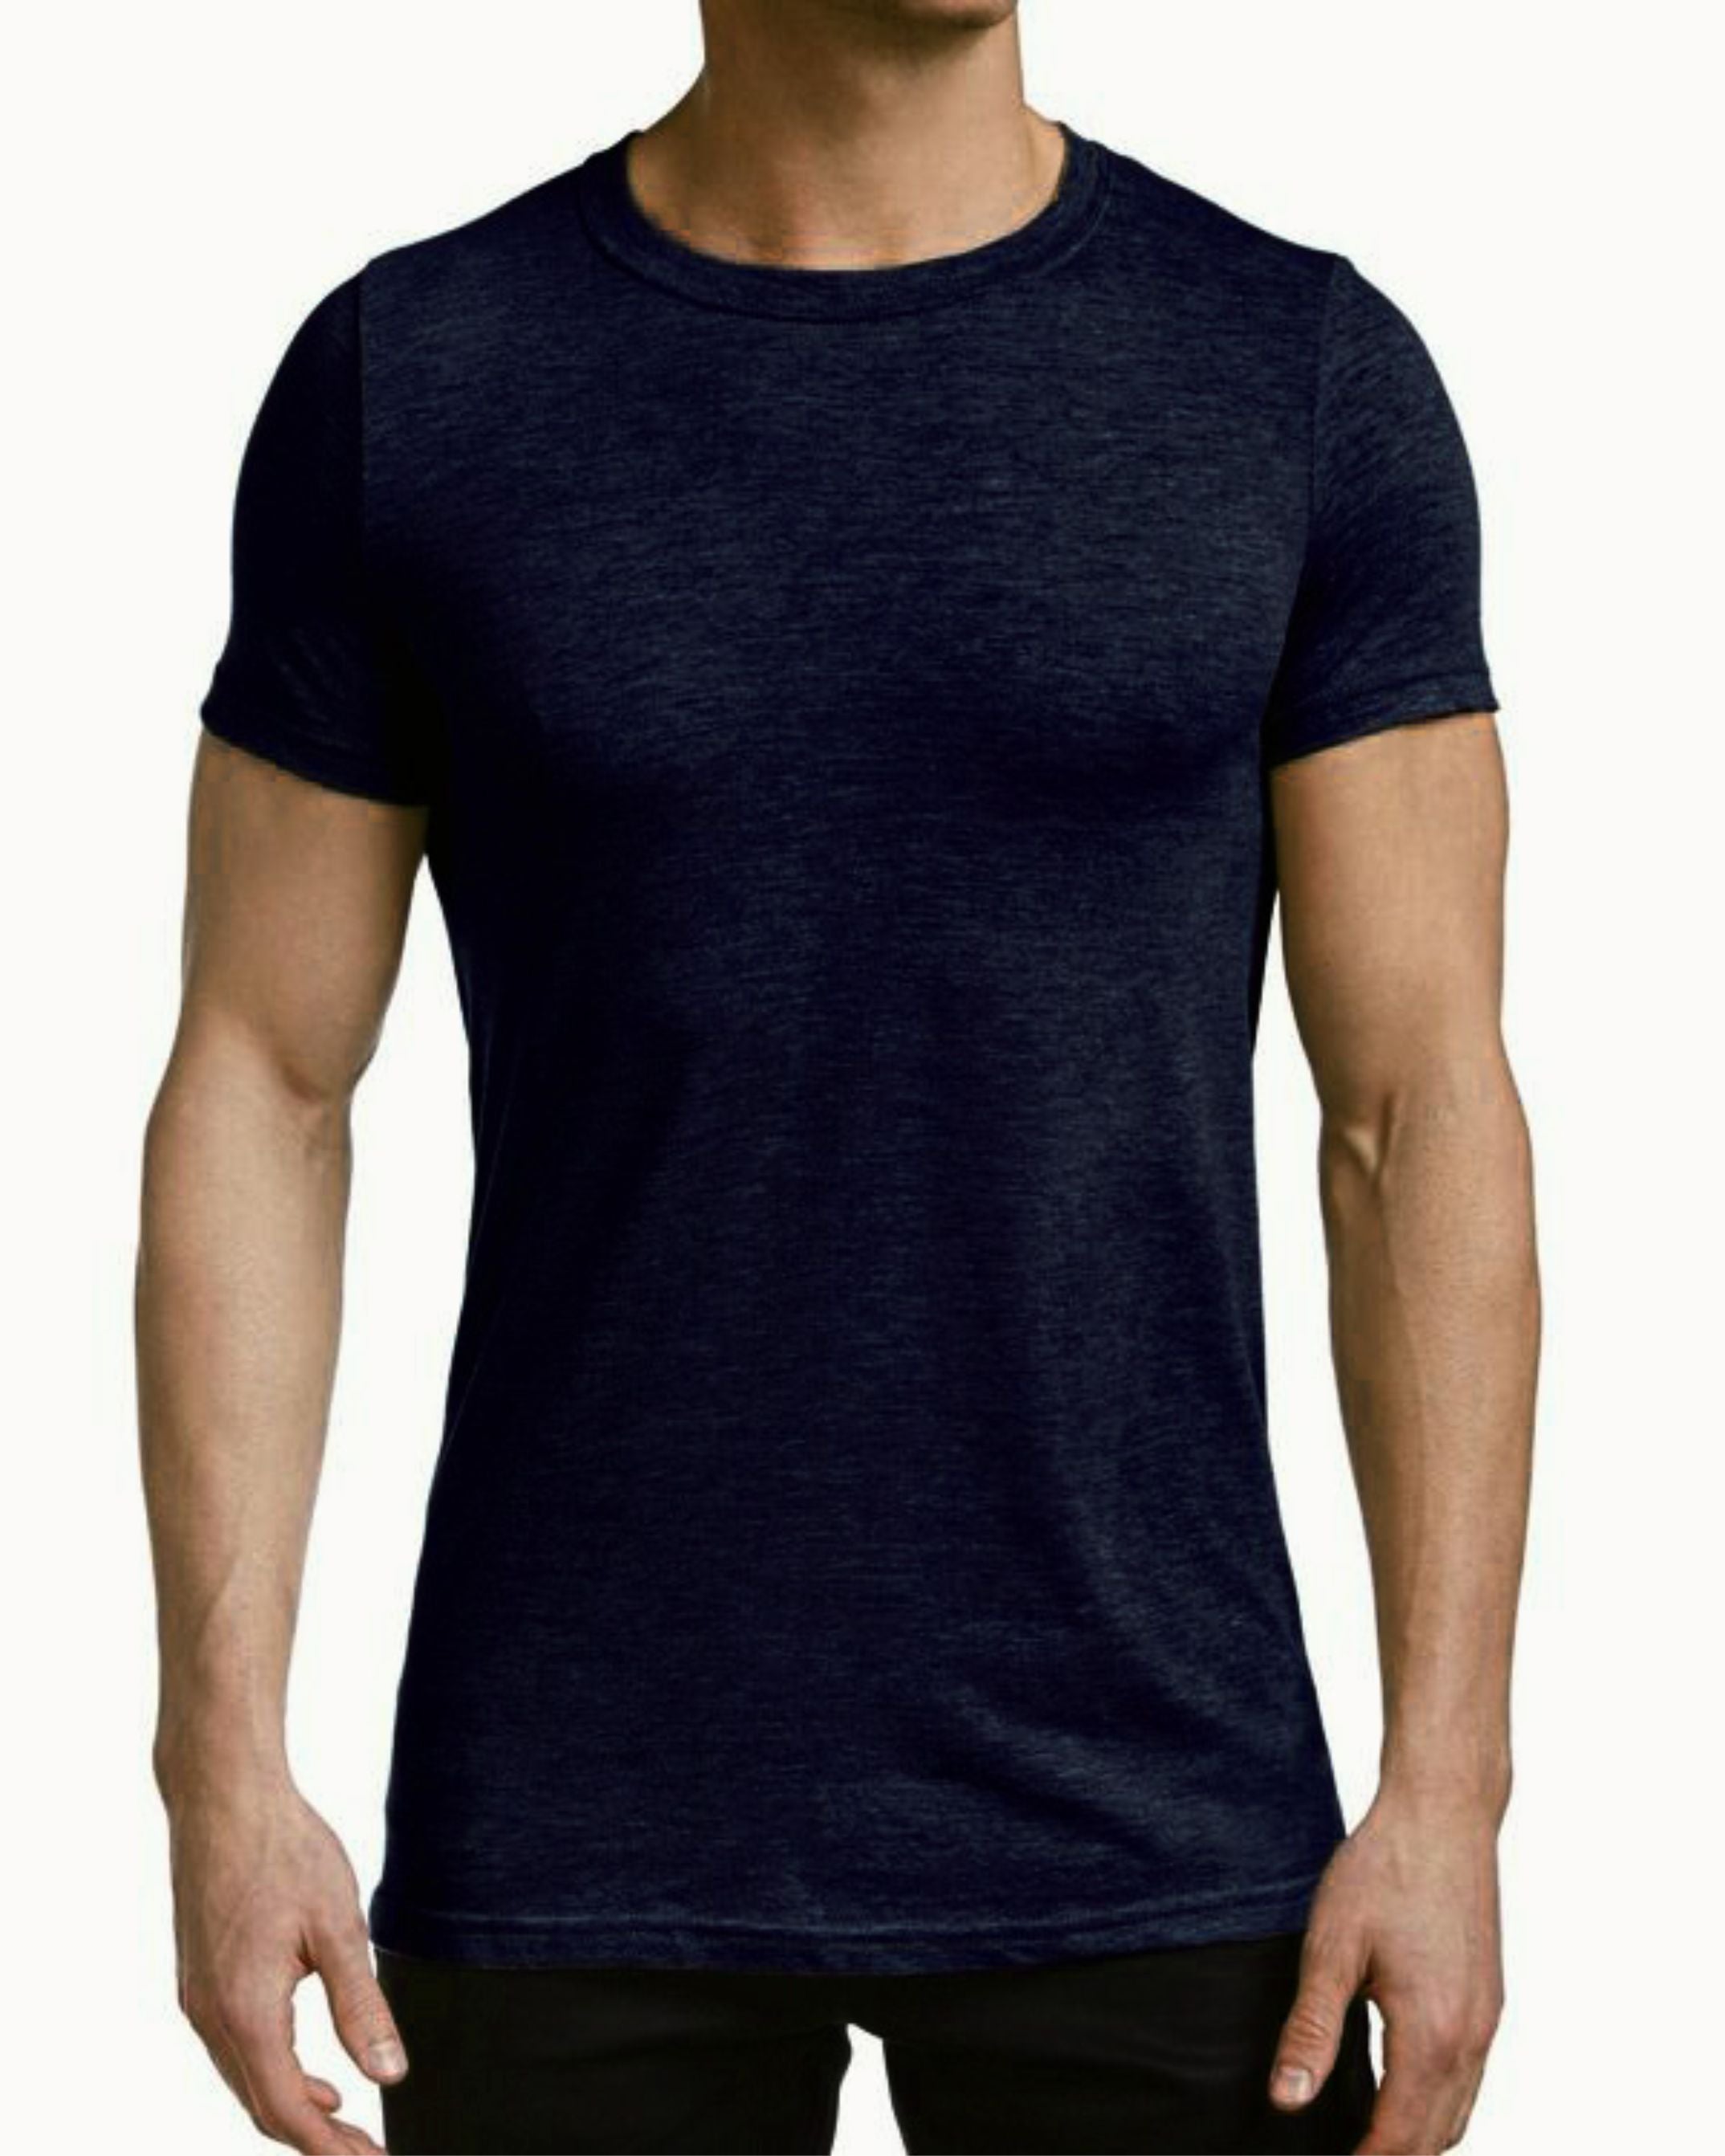 Camiseta básica de manga corta para hombre